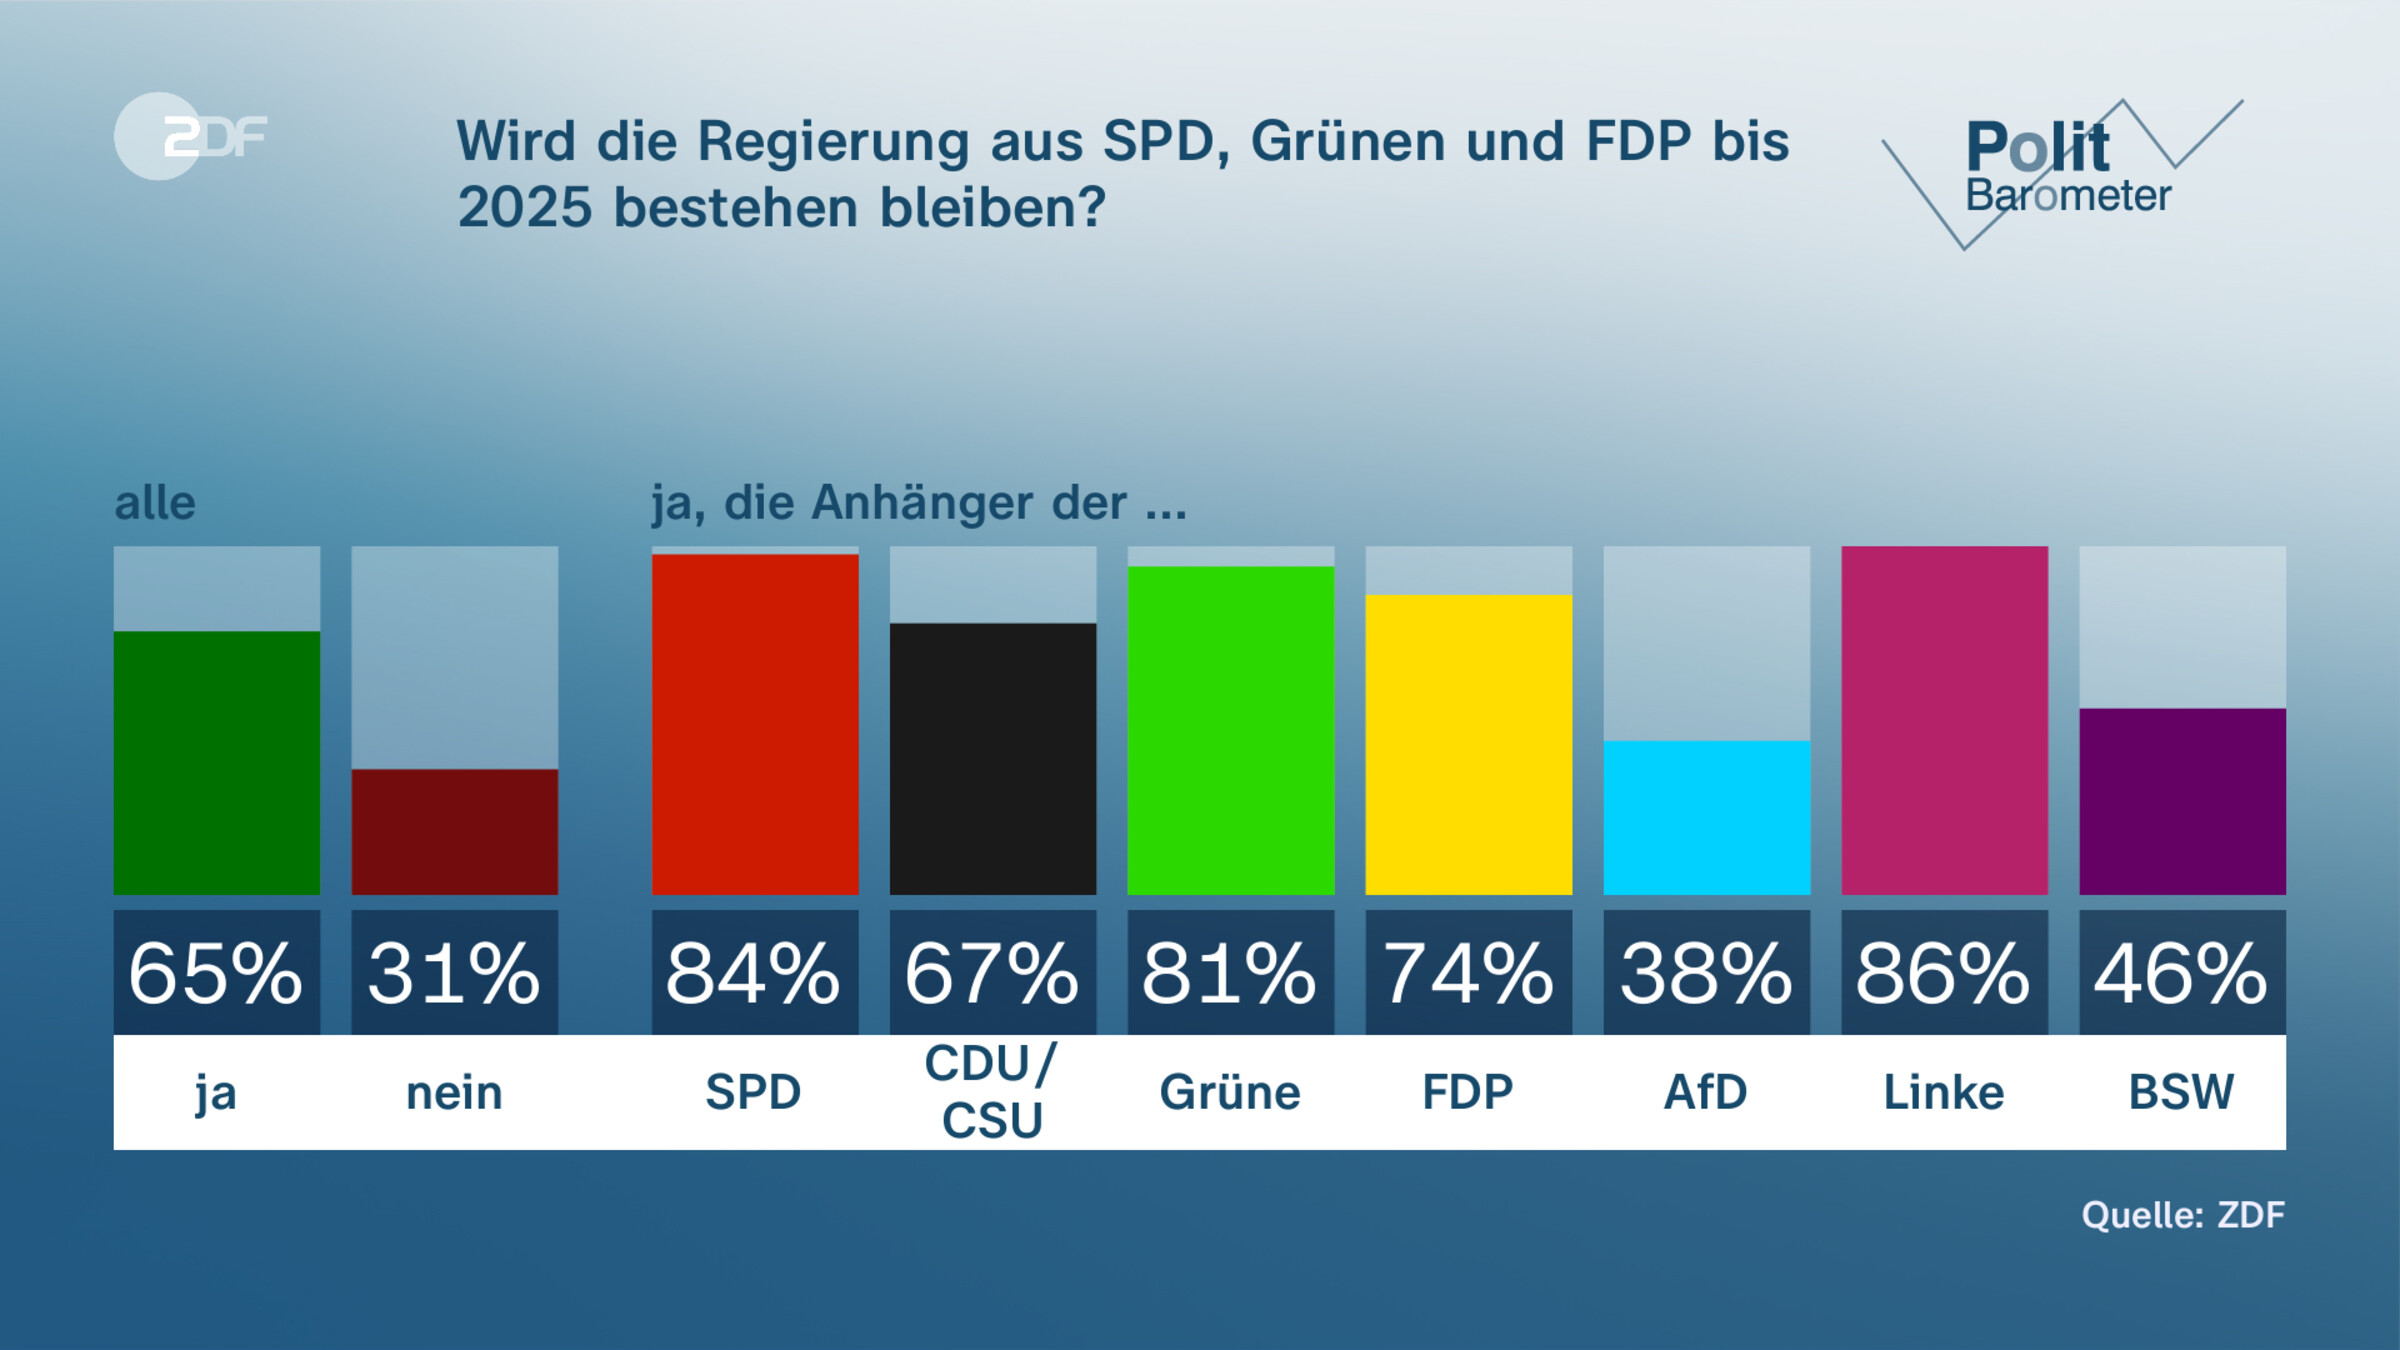 Wird die Regierung aus SPD, Grünen und FDP bis 2025 bestehen bleiben?